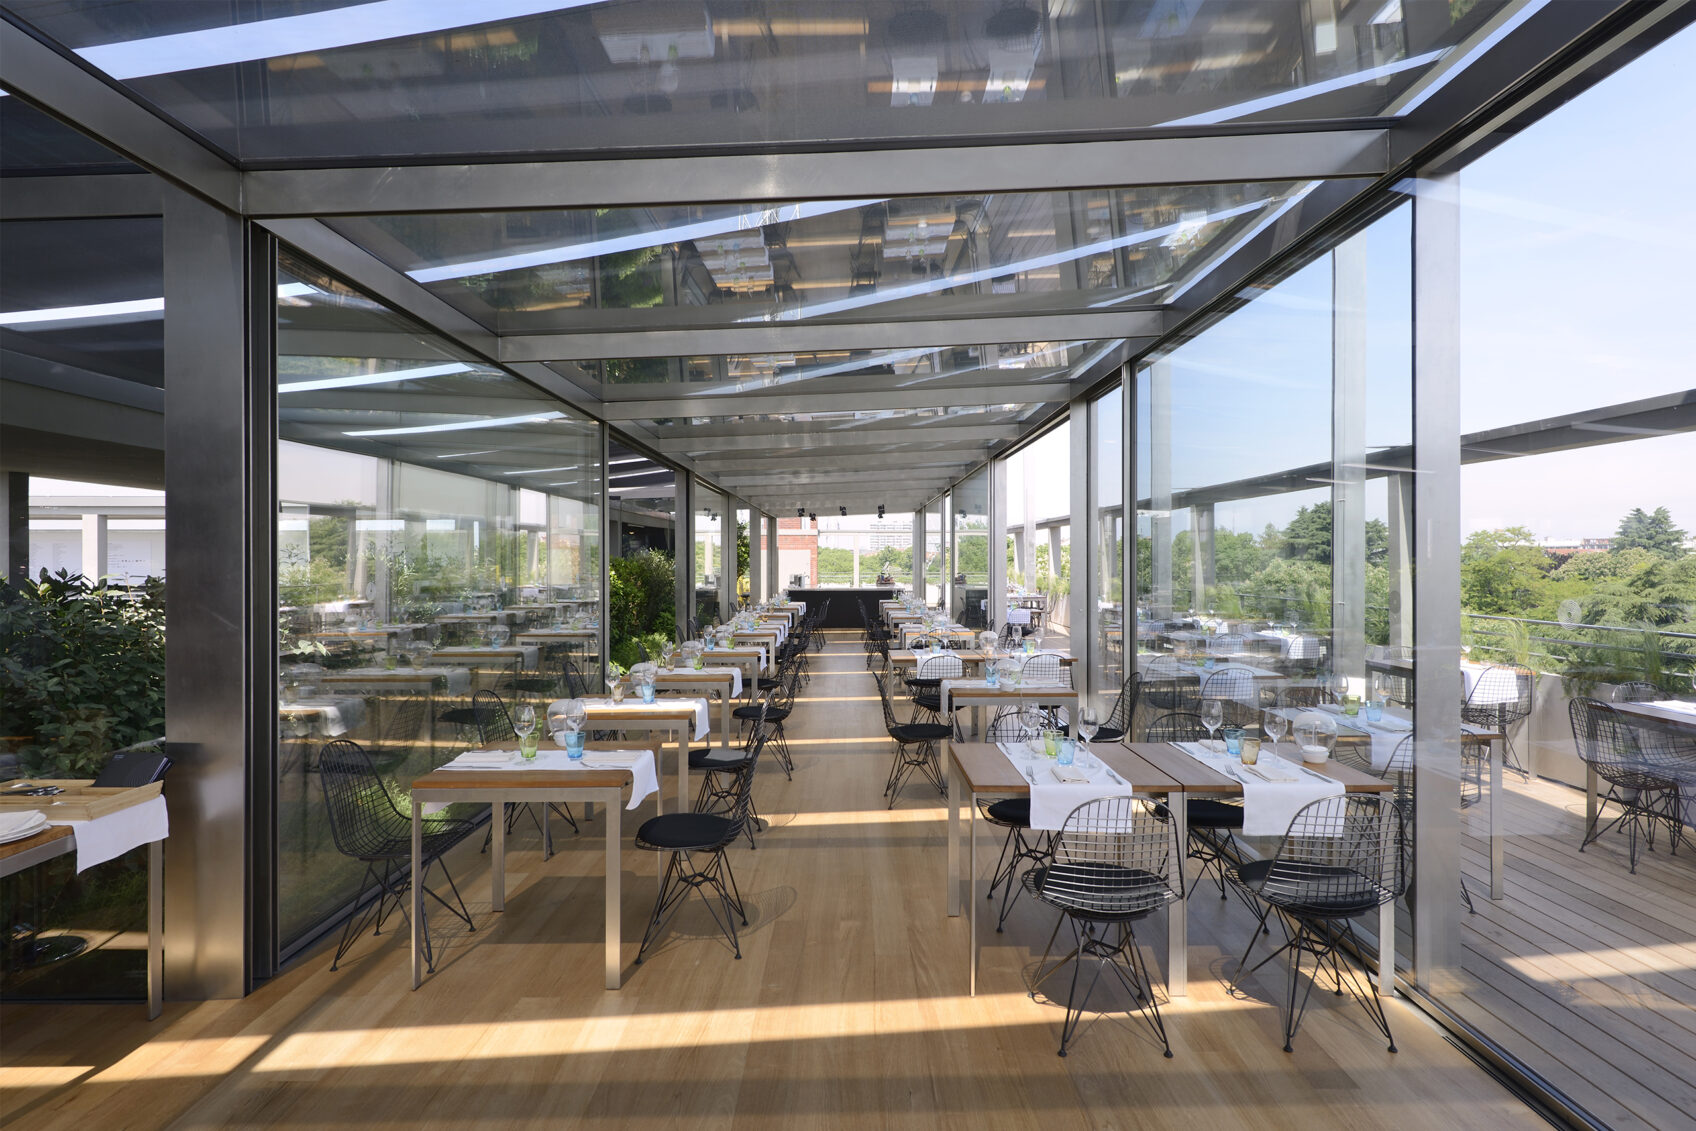 Tavoli presso il ristorante sulla Terrazza Panoramica del Palazzo dell'Arte di Milano